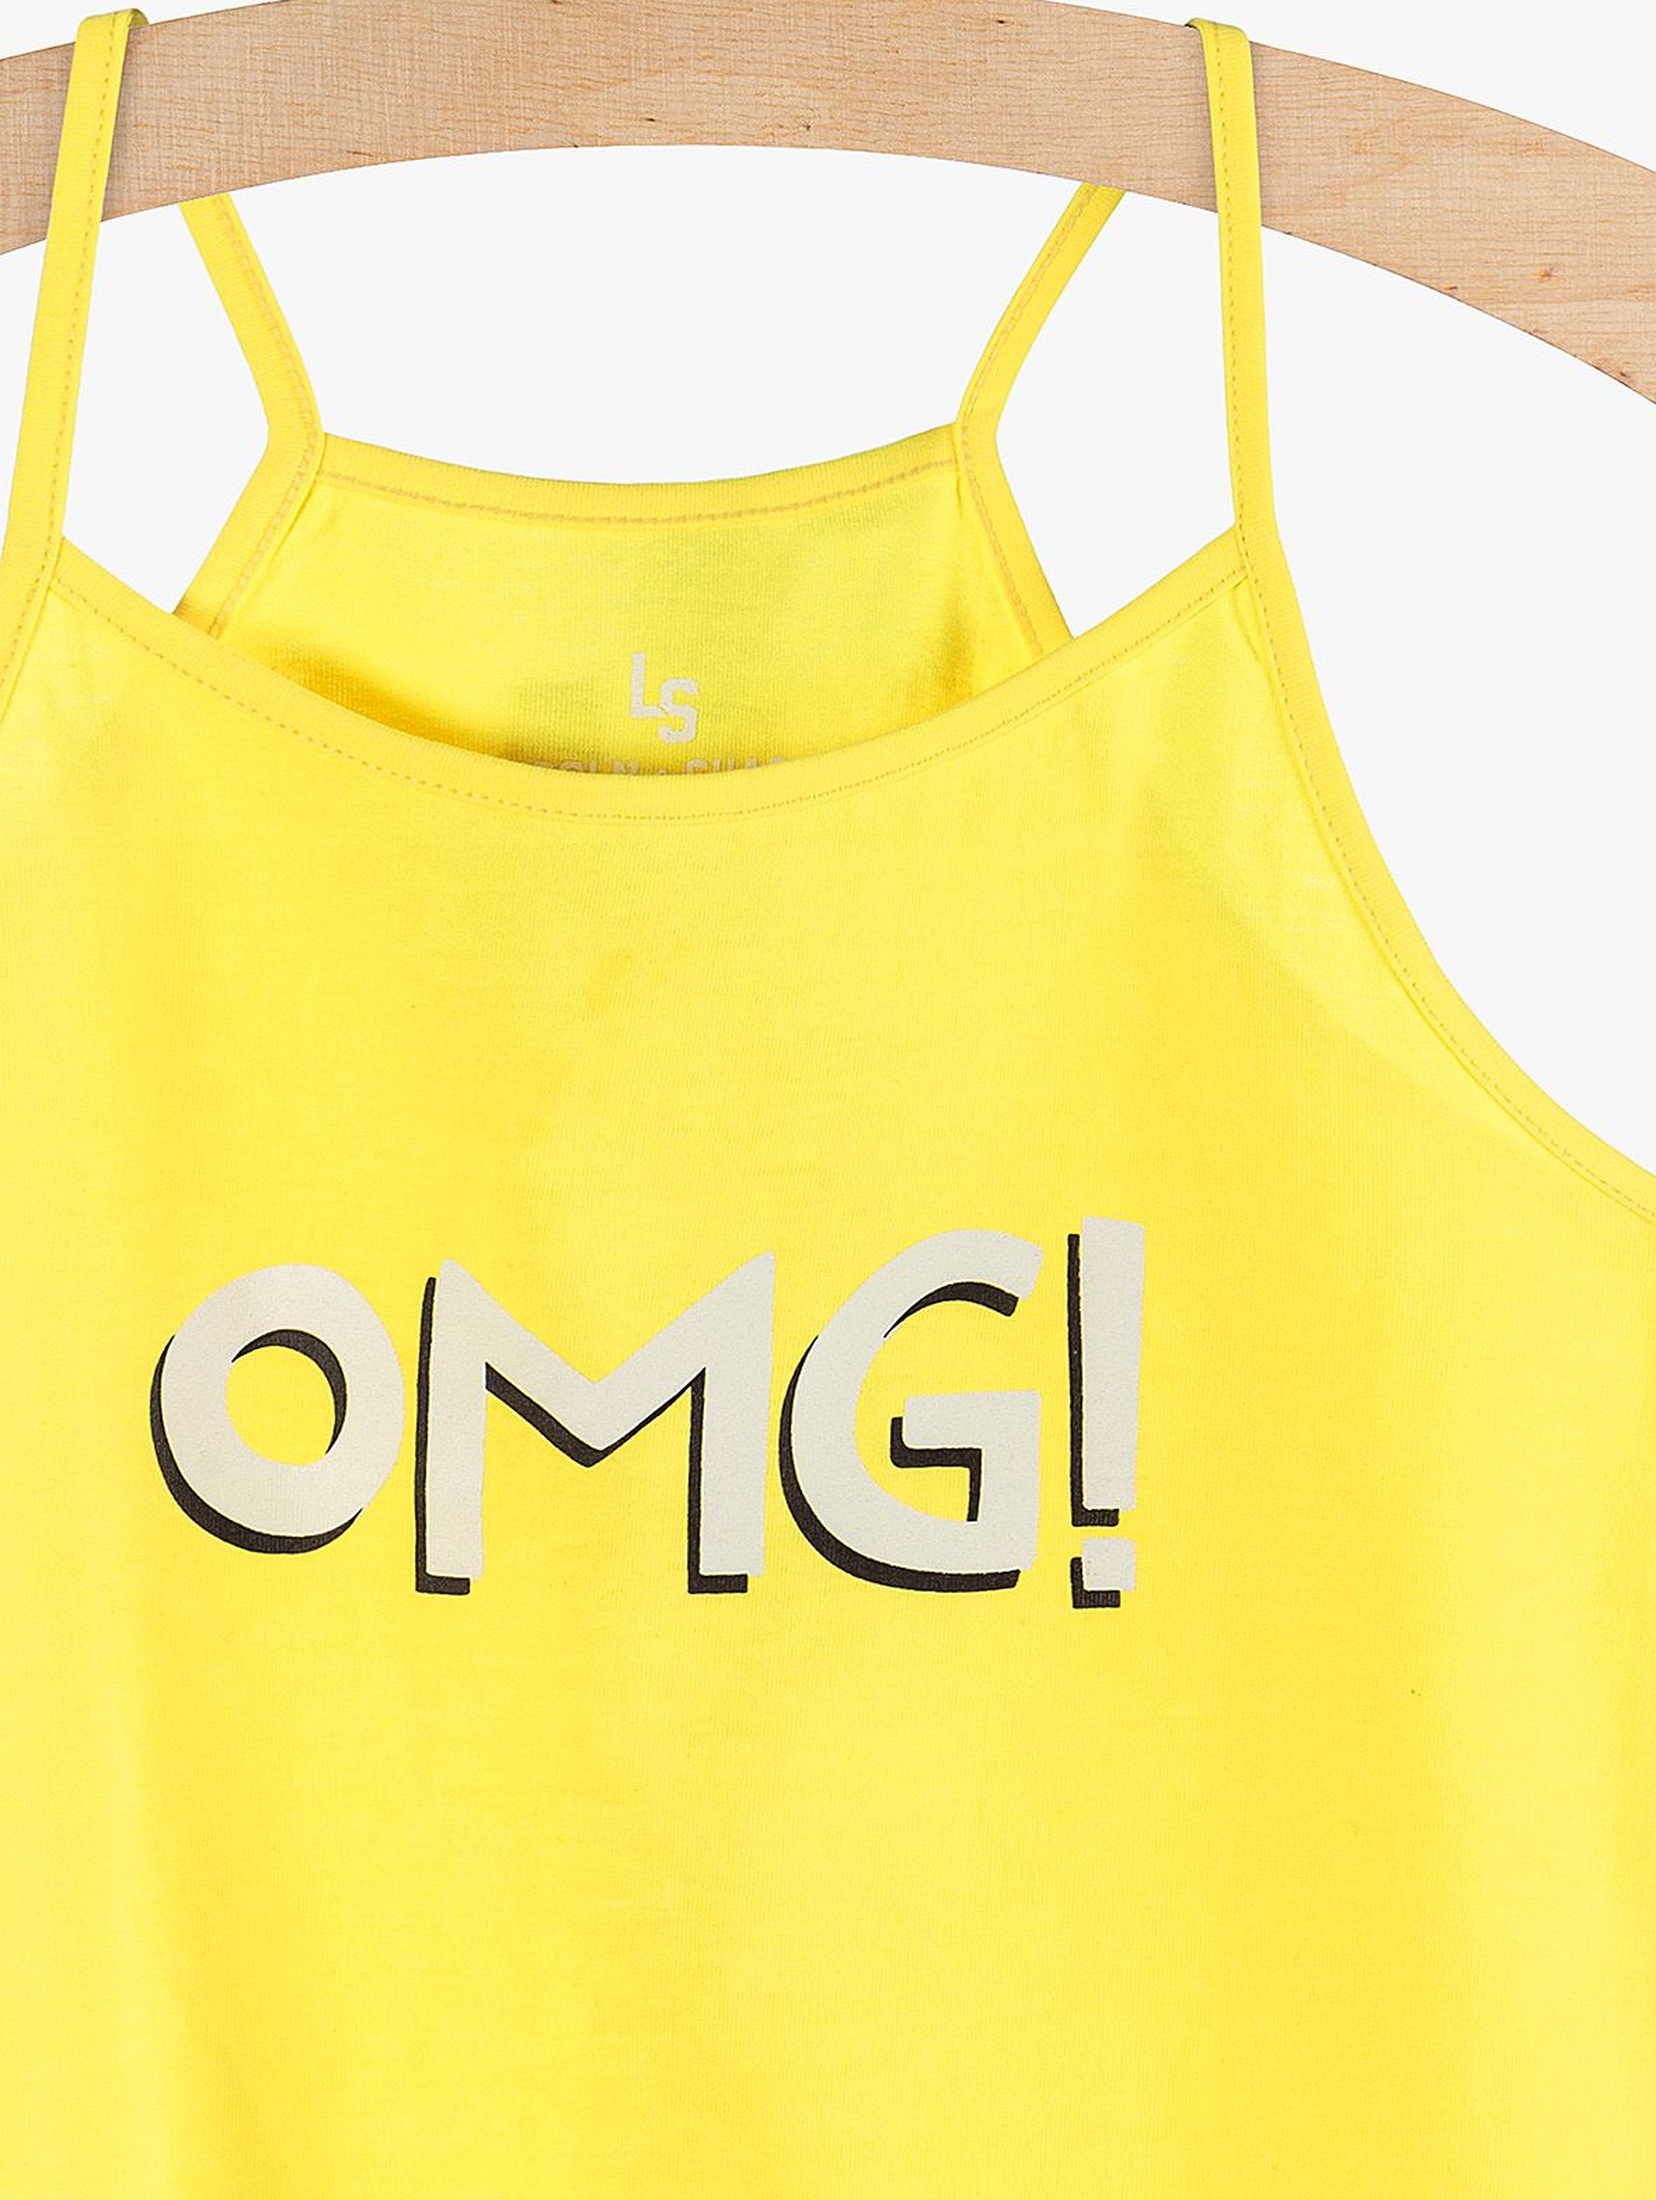 Bluzka dziewczęca żółta "OMG!"